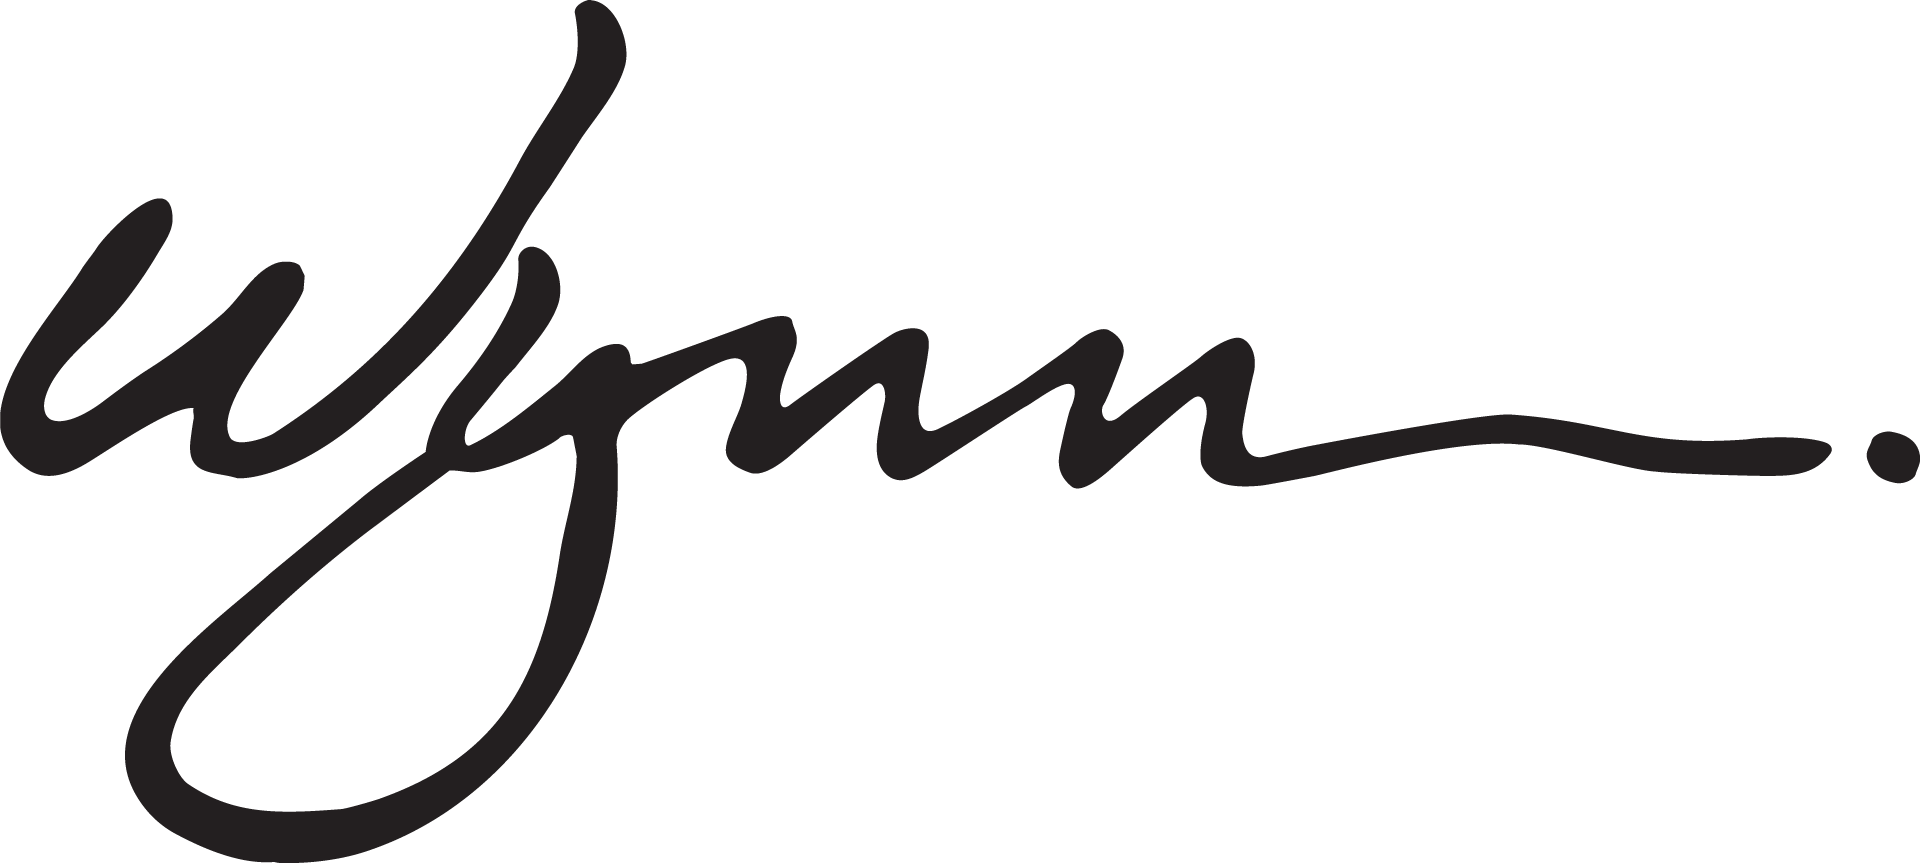 9. Wynn Macau Logo